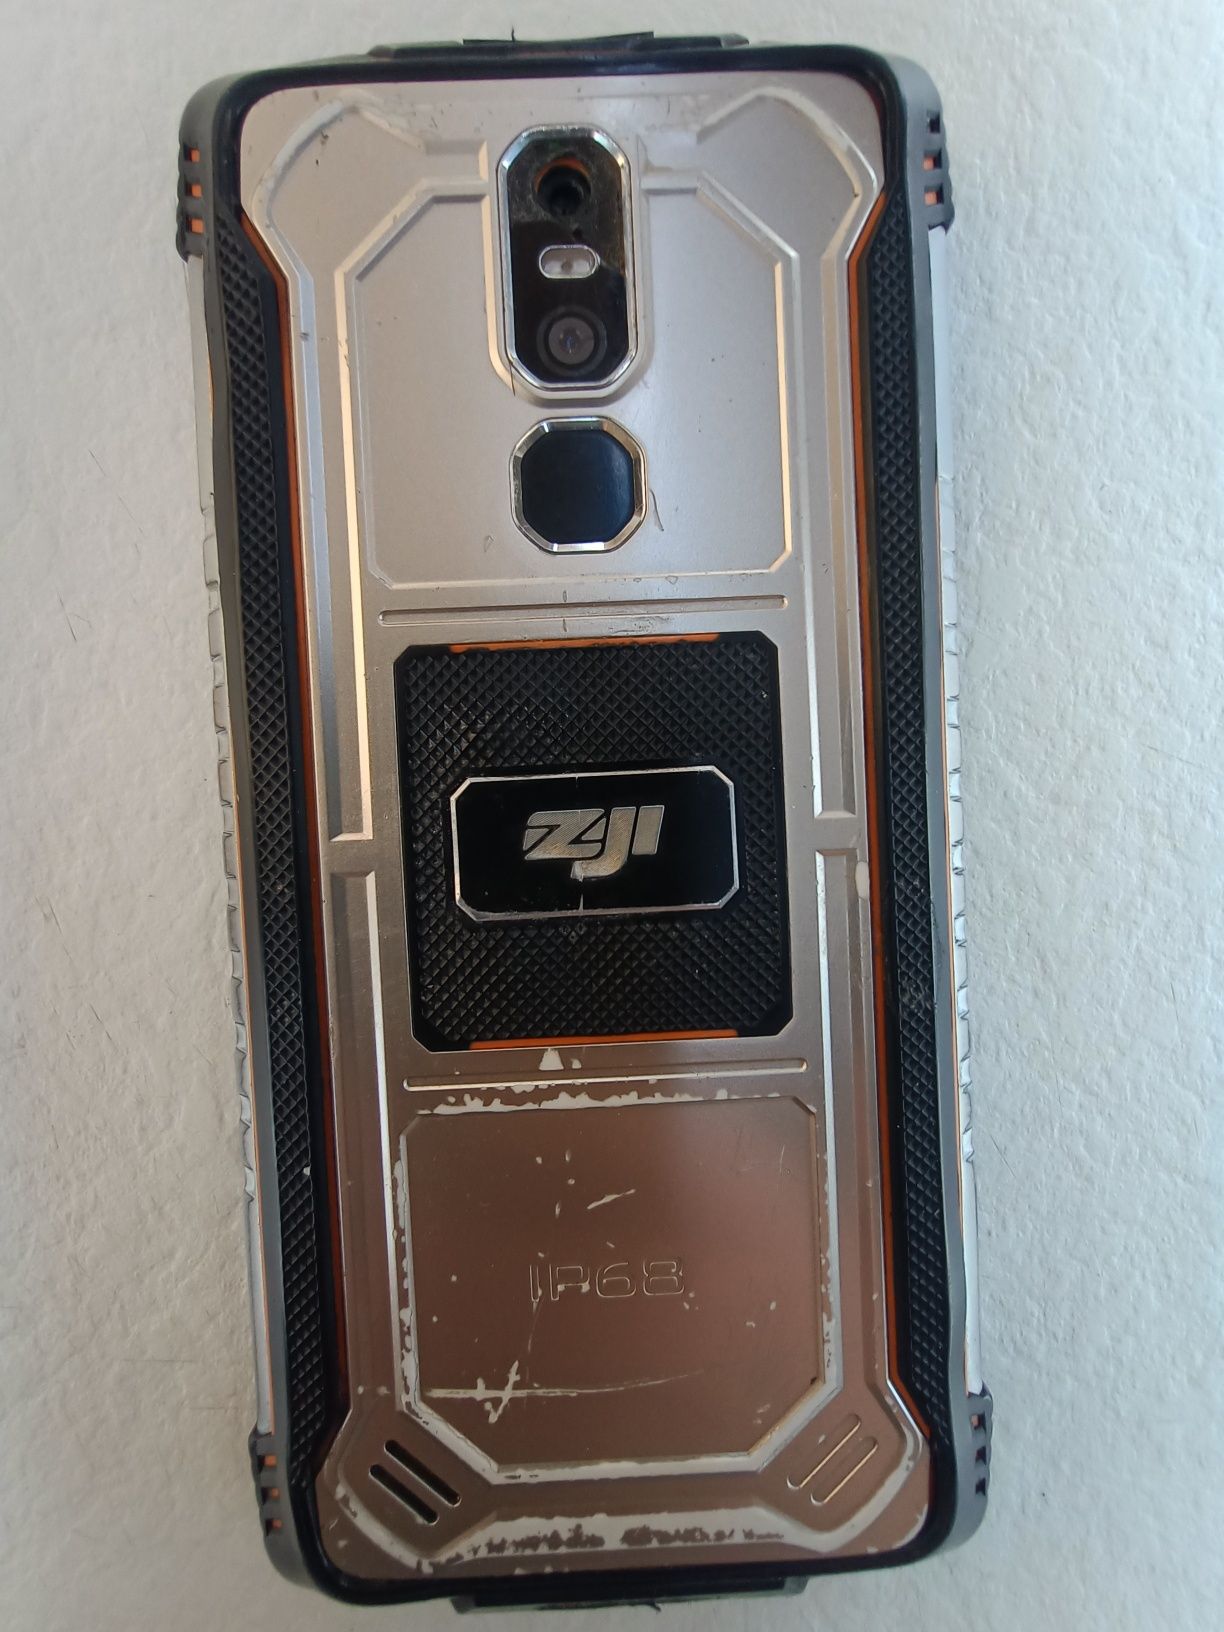 Telefon Homtom ZOJI Z11 + dwa smartwatche